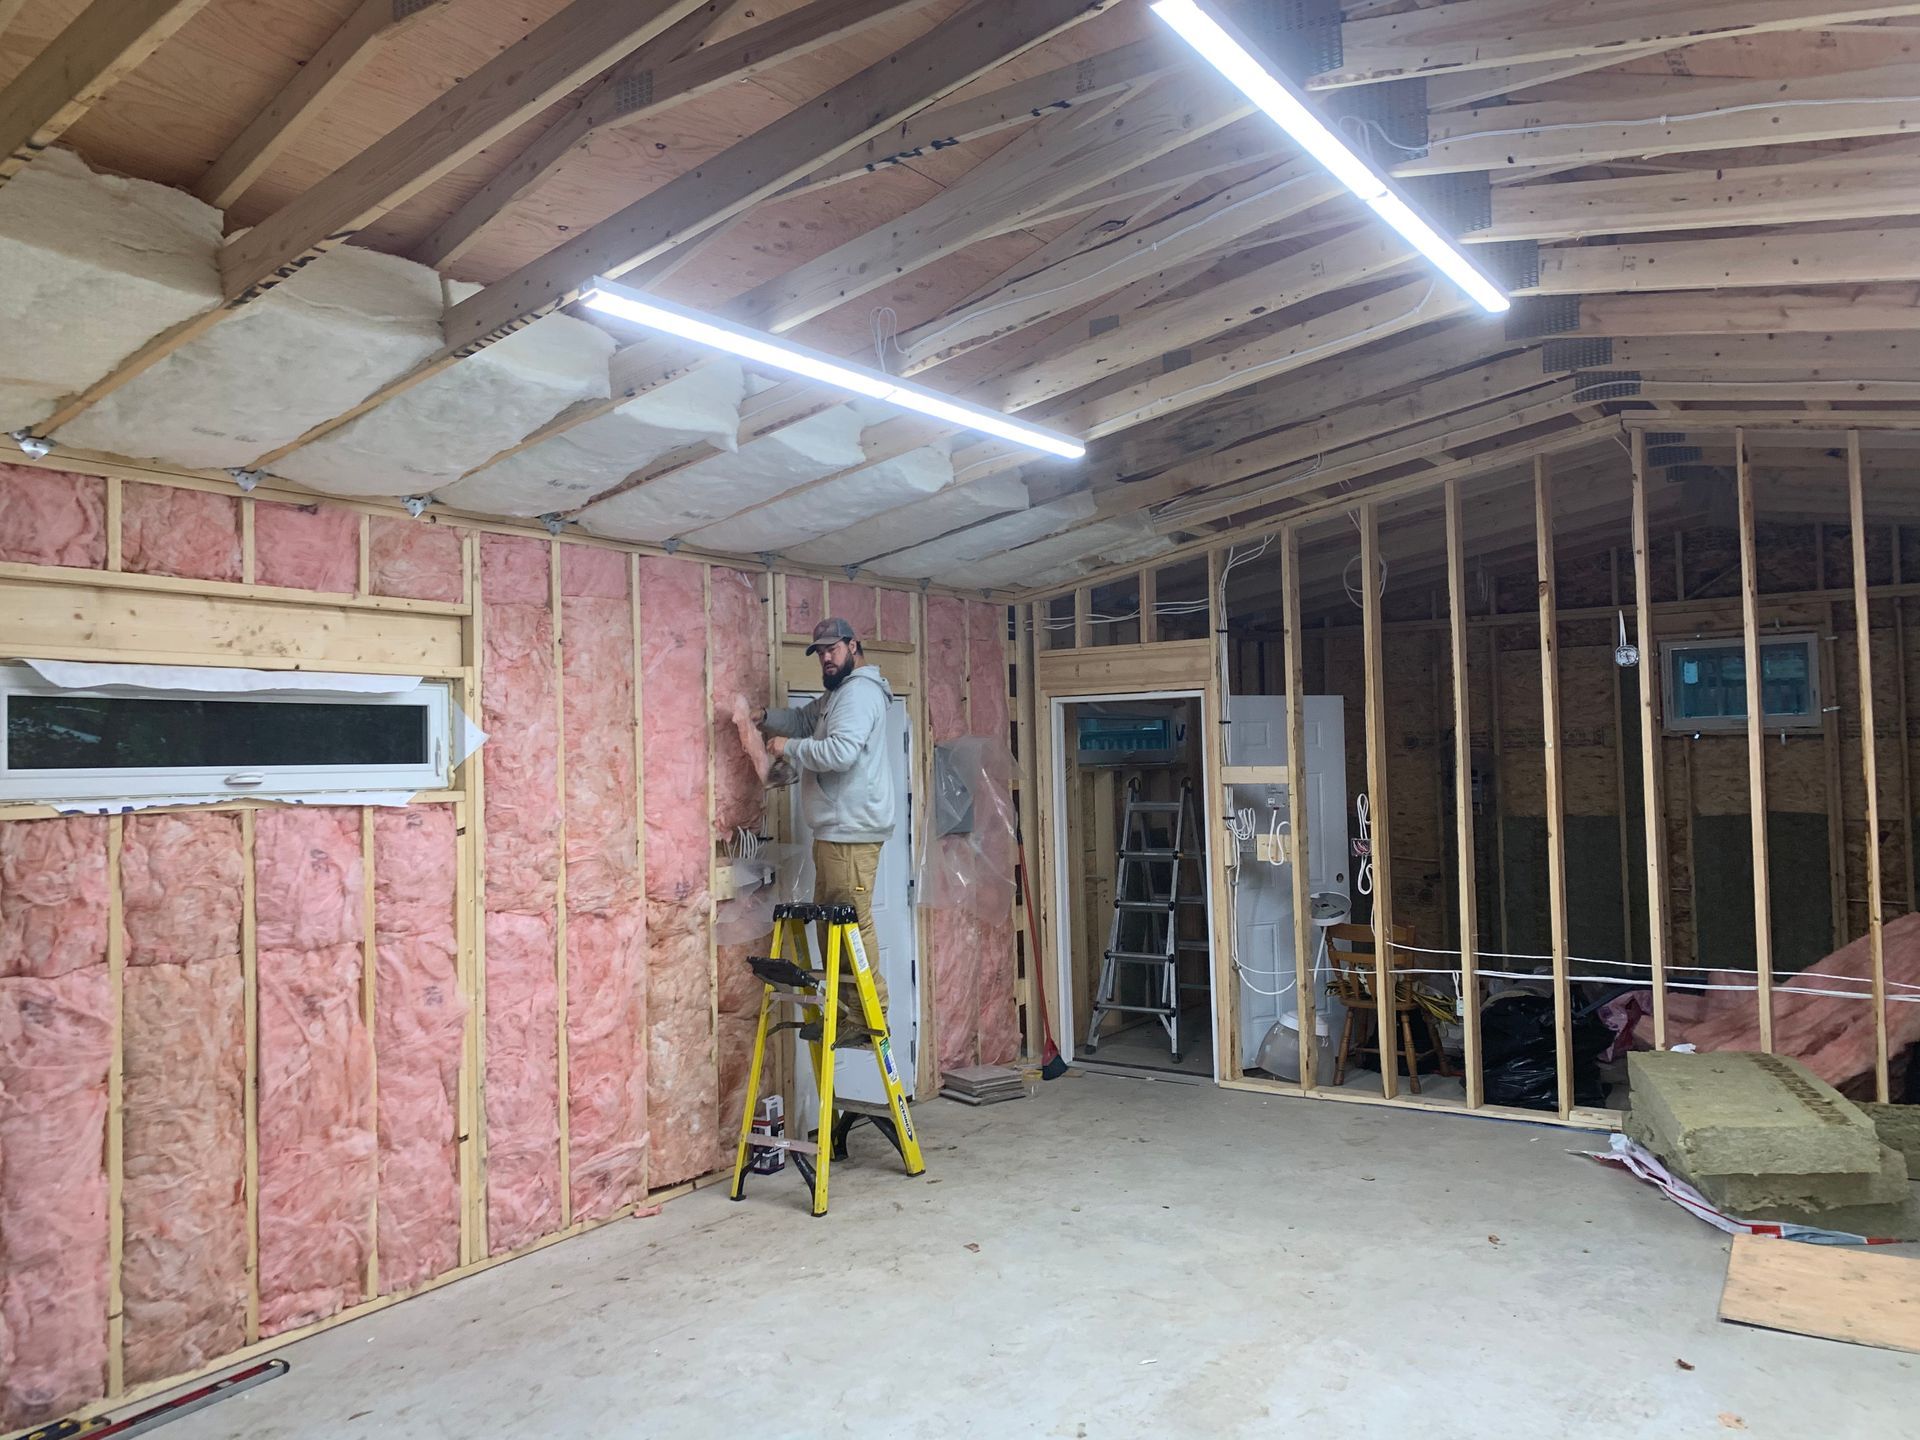 Garage Interior in Progress